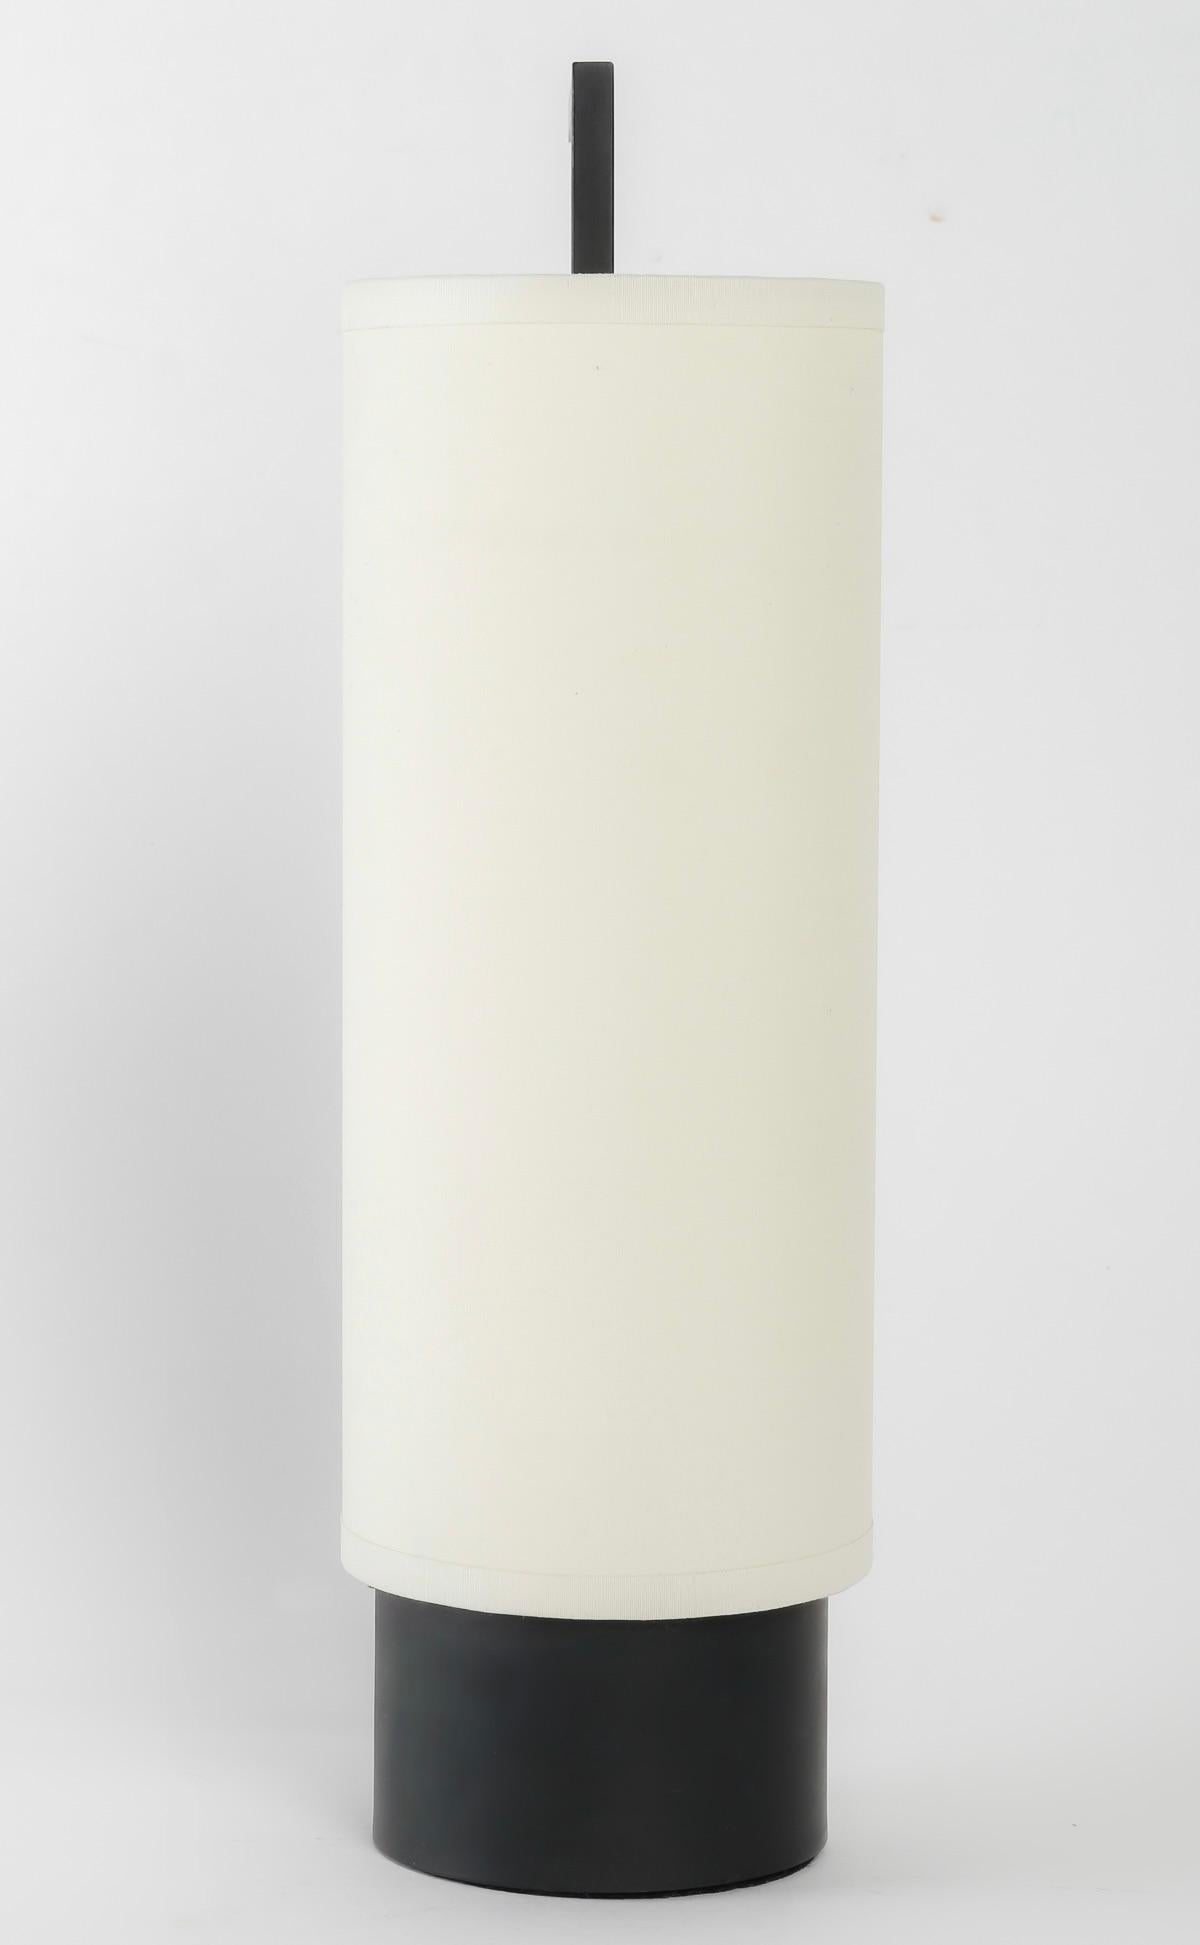 Bestehend aus einem schwarzen zylindrischen Sockel, auf dem ein zylindrischer Lampenschirm aus cremefarbener Baumwolle ruht, der sich an den Sockel anschmiegt und von einer schwarzen schmiedeeisernen Stange mit quadratischem Querschnitt gehalten